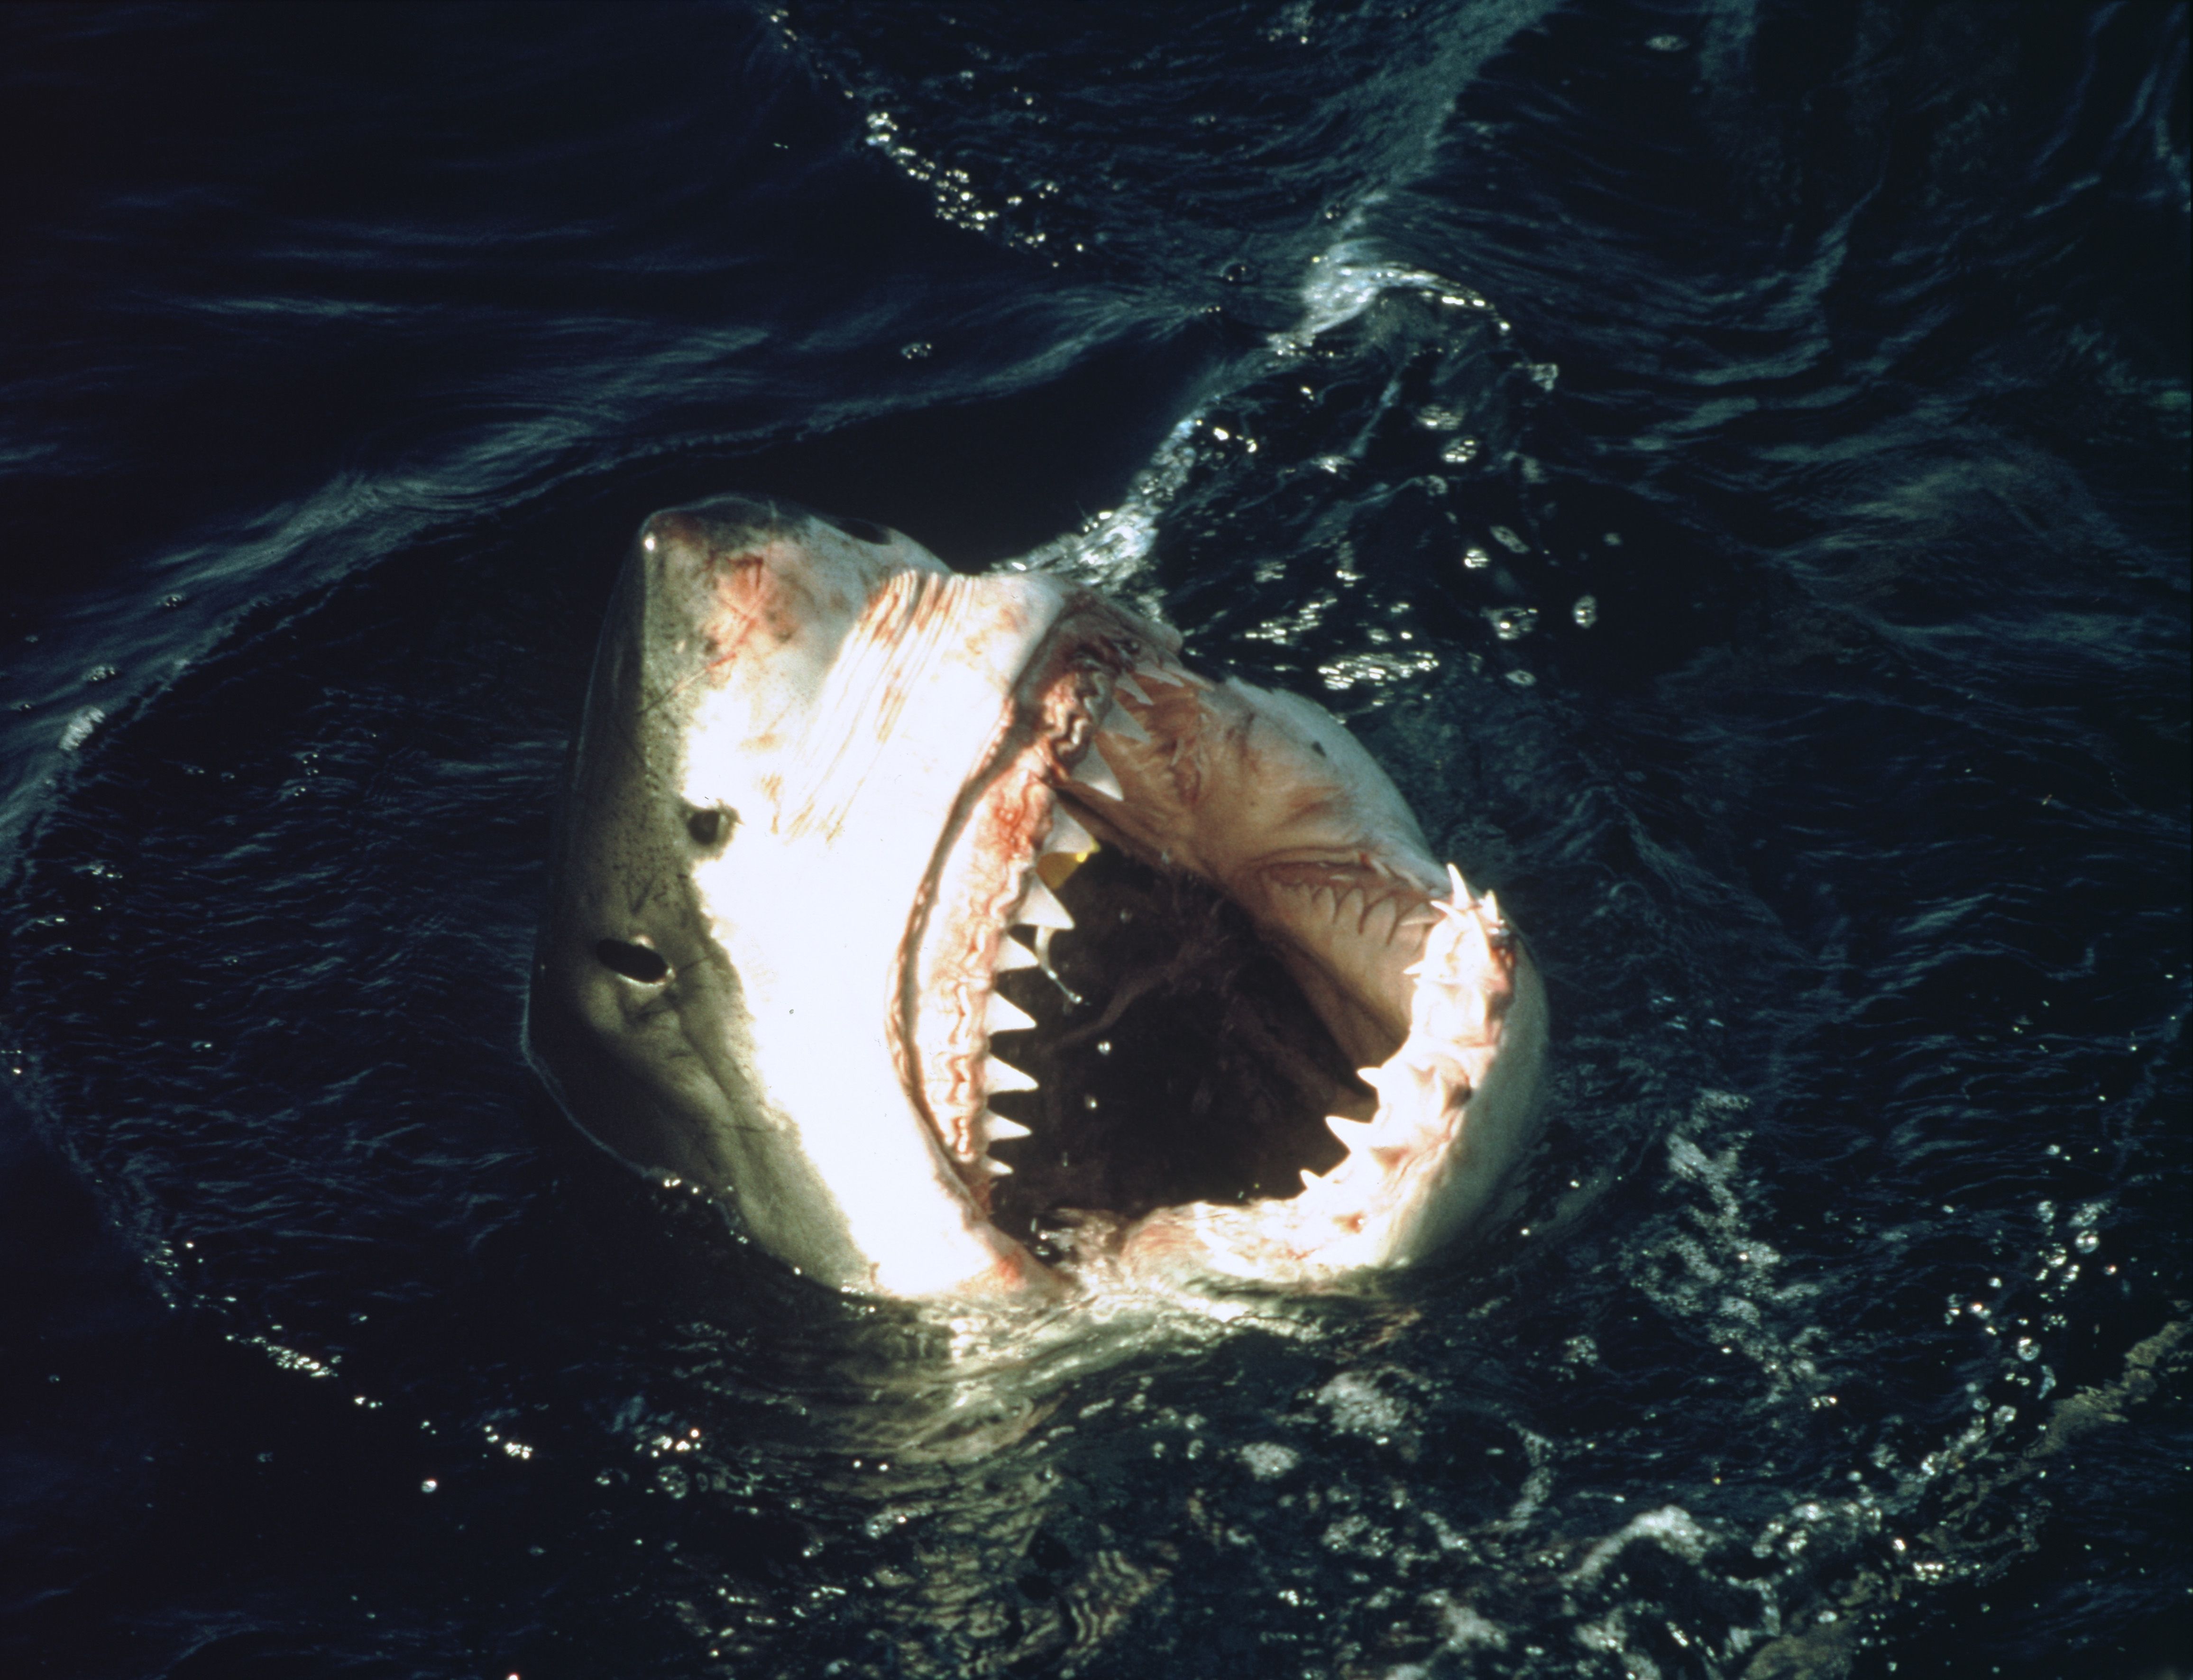 映画 ジョーズ に影響を与えた サメと人間に実際に起こった脅威の事件